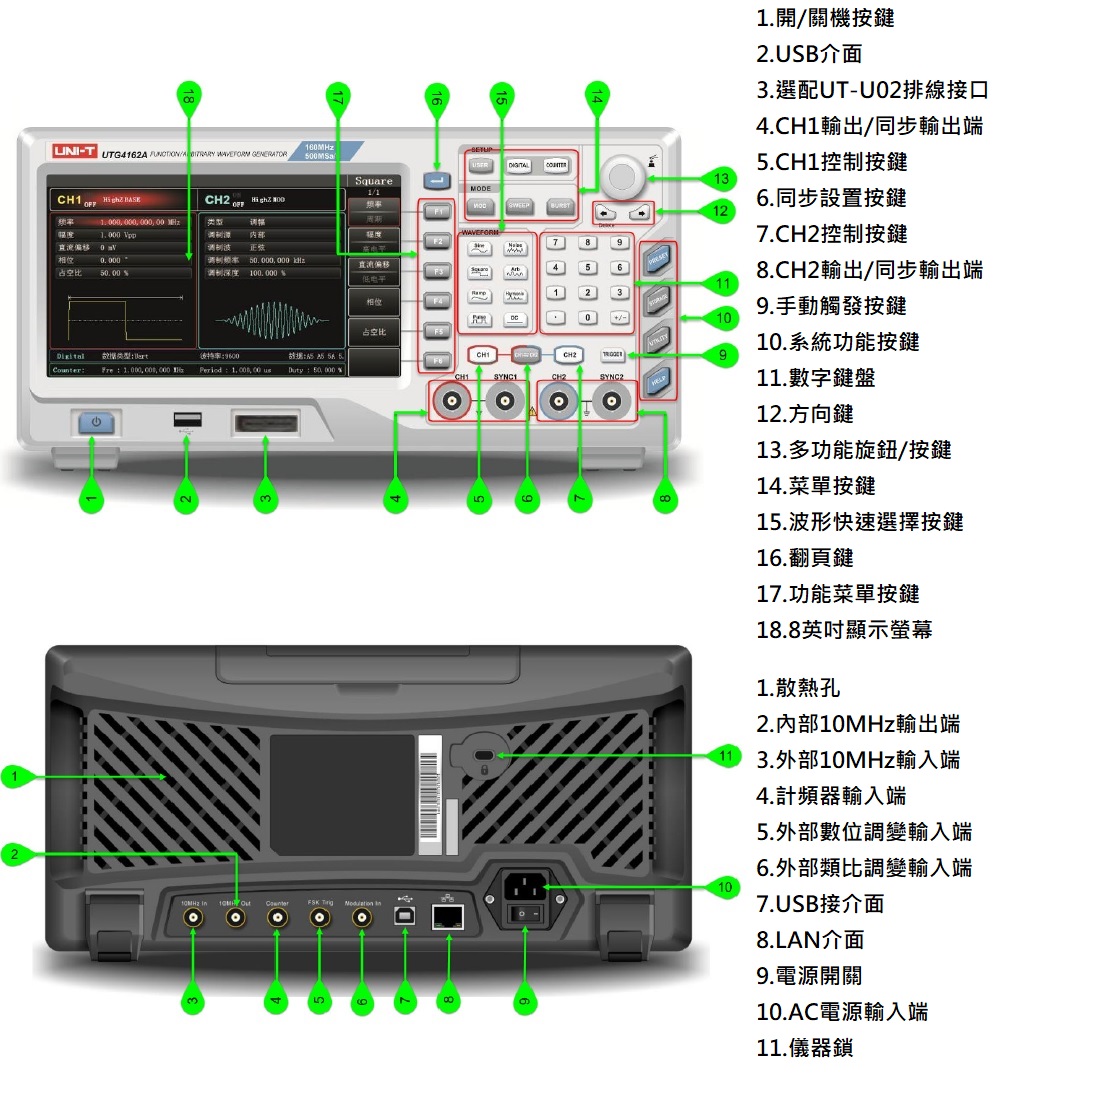 UTG4000A雙通道函數/任意波形產生器前後介面說明